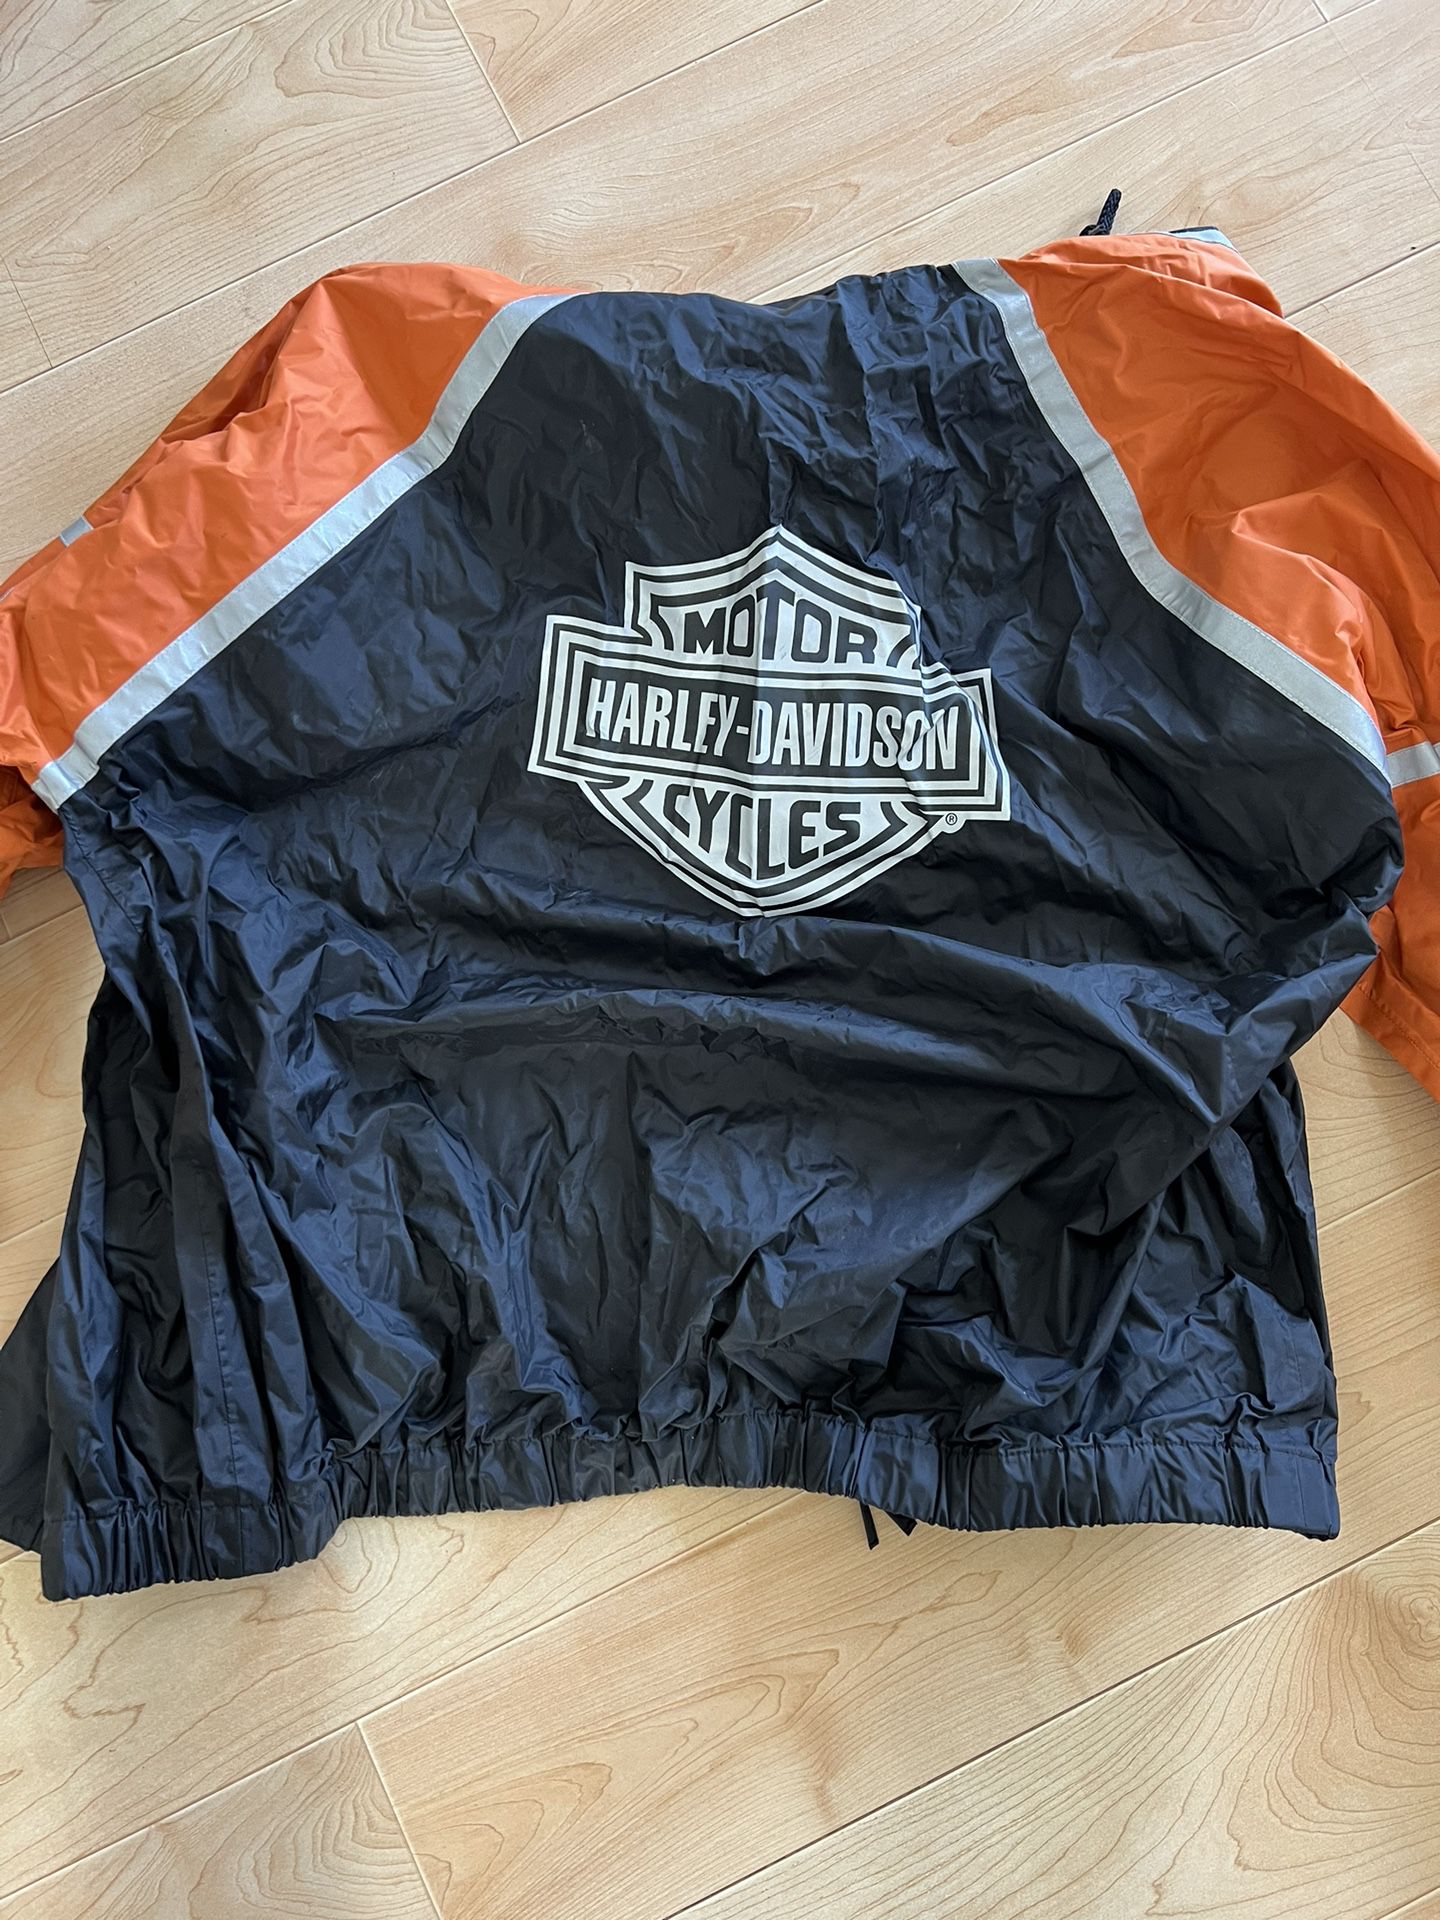 Harley Davidson Rain Gear